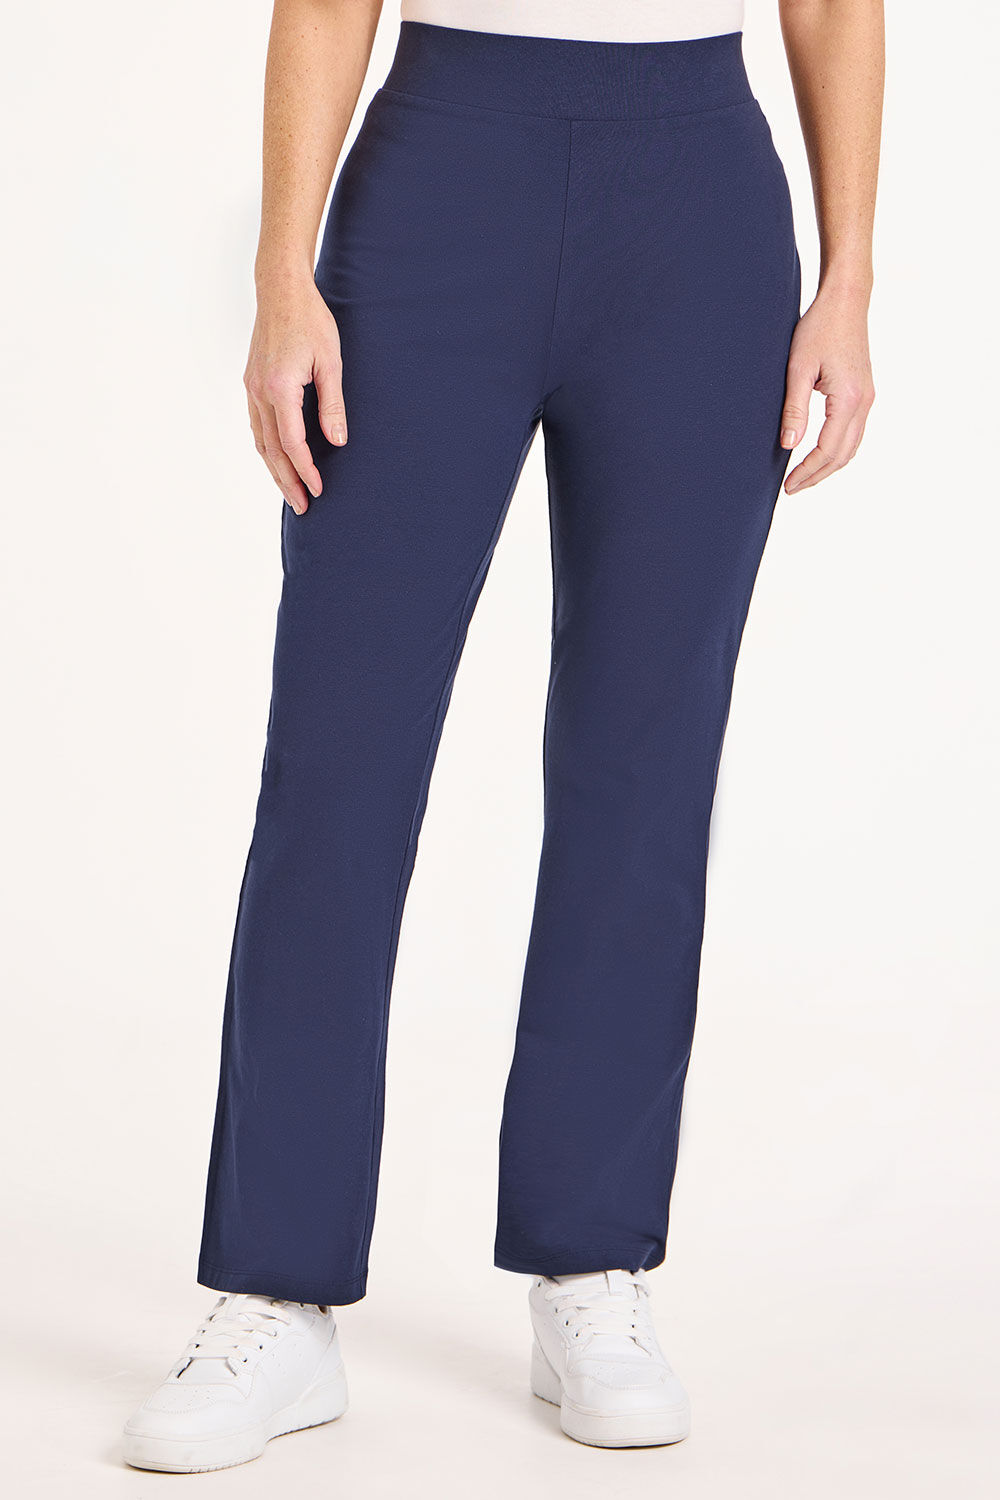 Bonmarche Navy Short Yoga Pants - Blue - Size 18